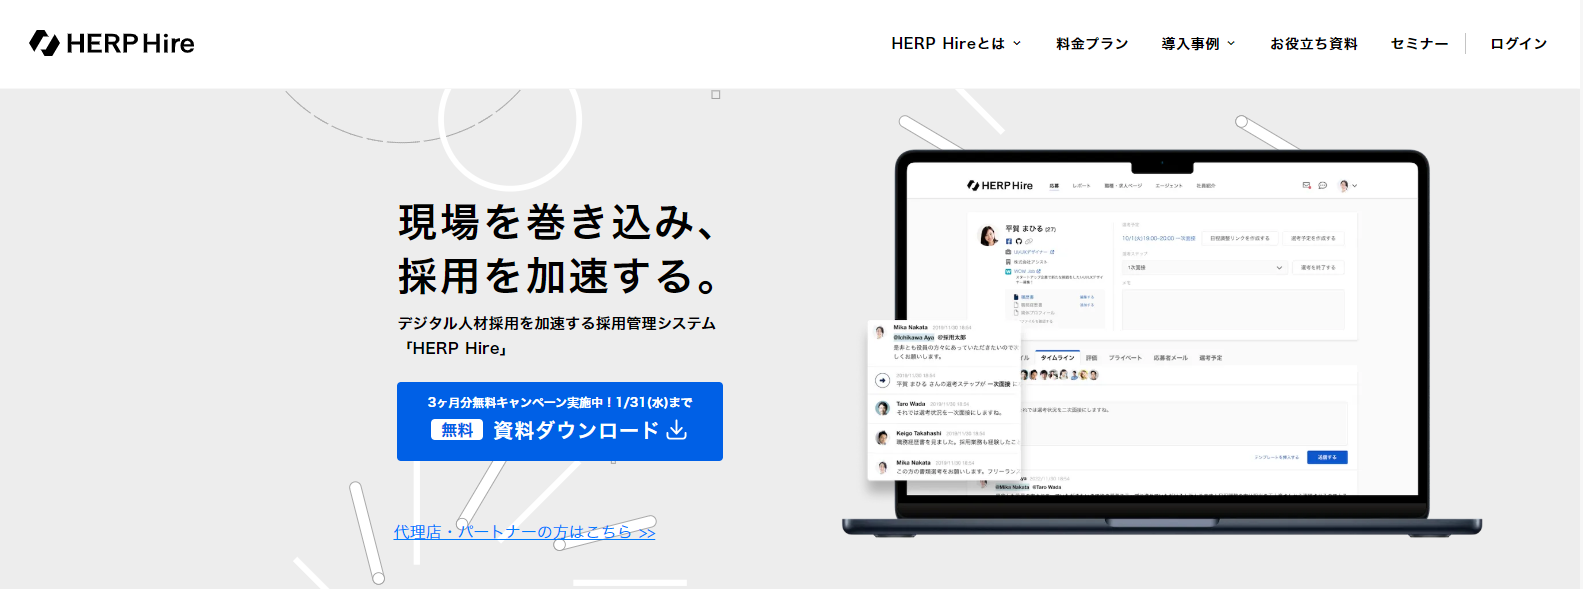 HERP Hire／(株)HERP